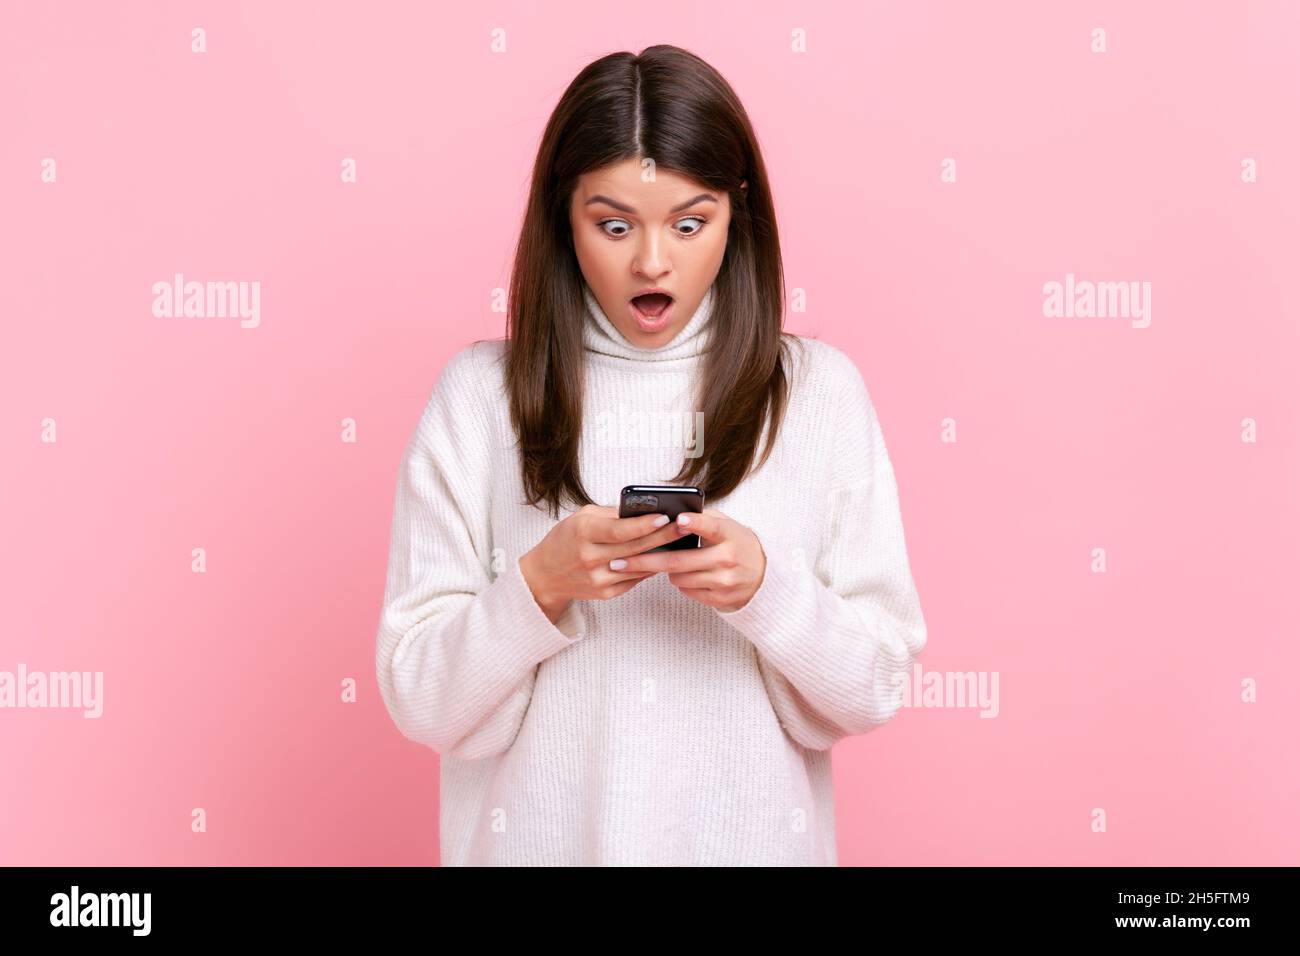 Porträt der schockierten schönen Bloggerin stehend, verwenden Smartphone mit staunenden Gesicht, geöffneten Mund, trägt weißen lässigen Stil Pullover. Innenaufnahme des Studios isoliert auf rosa Hintergrund. Stockfoto